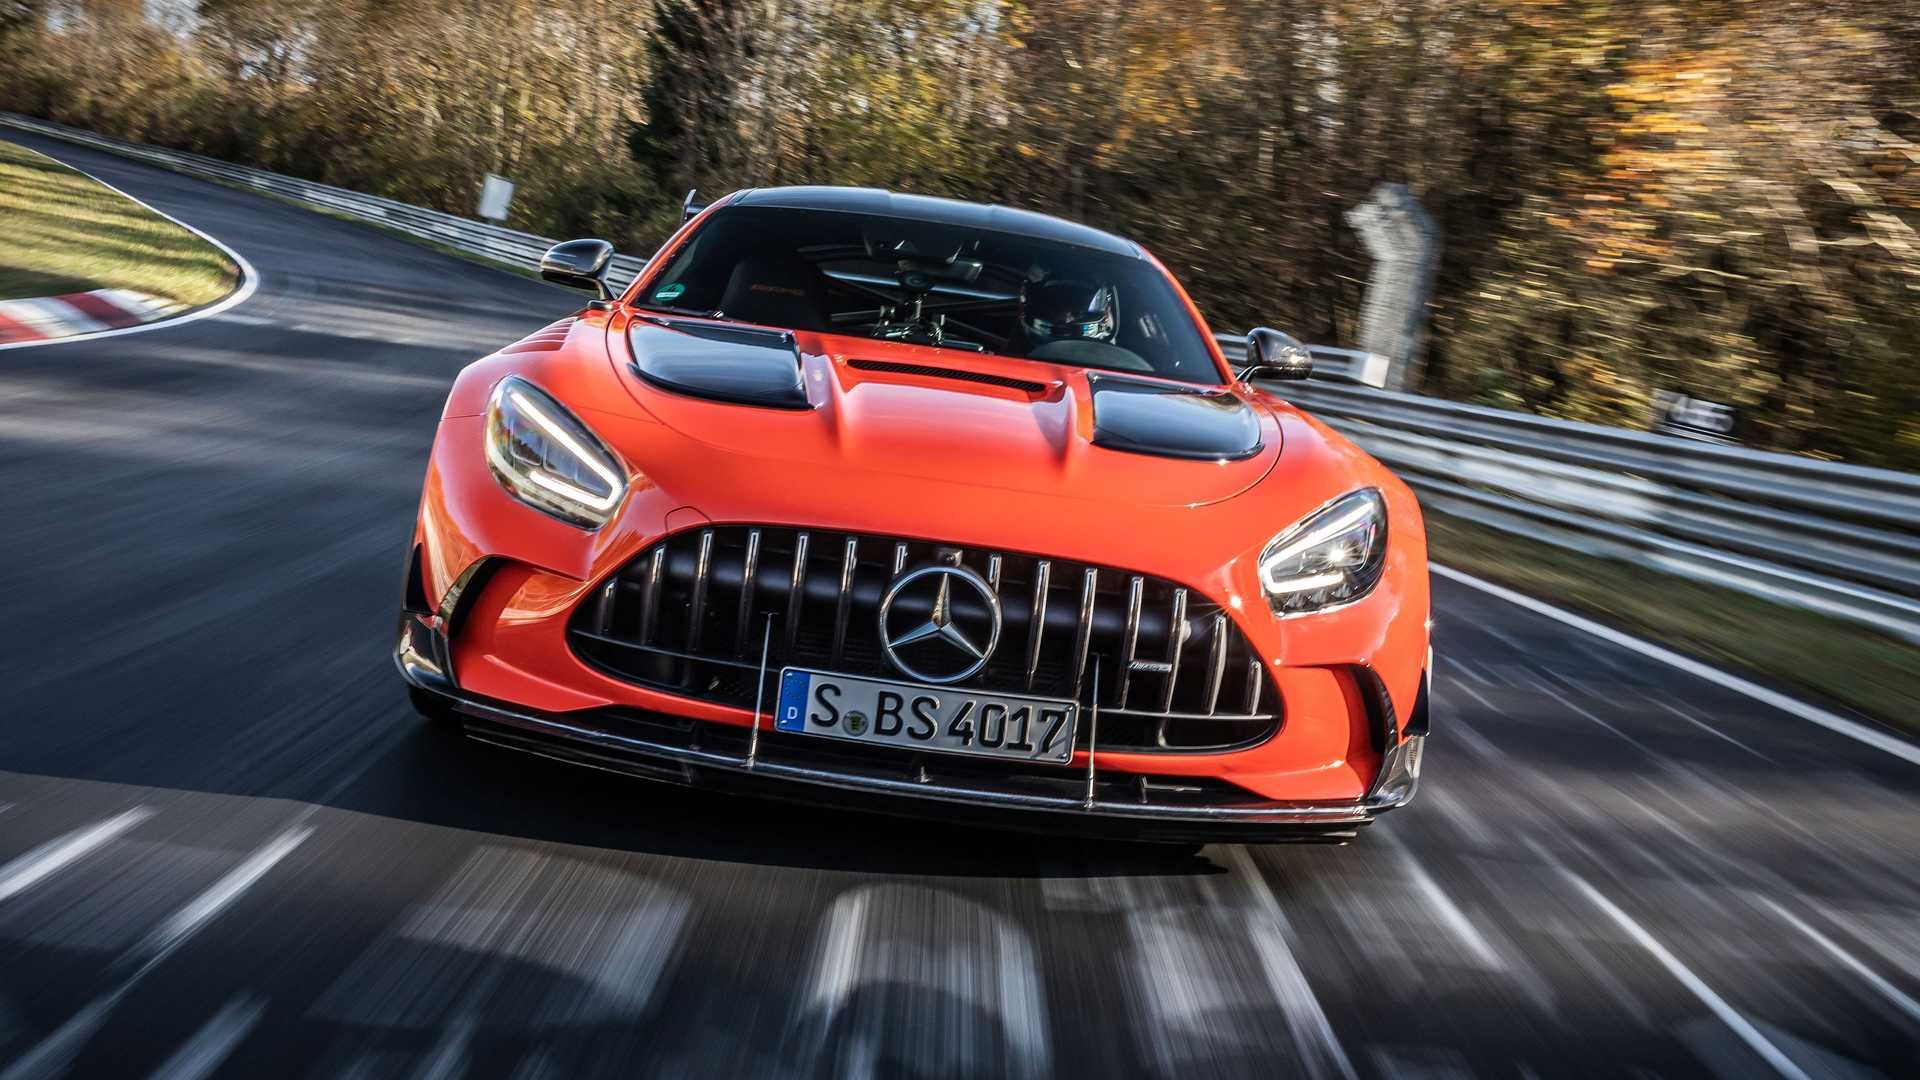 مرجع متخصصين ايران نماي جلو خودرو مرسدس آ ام گ جي تي سري سياه / Mercedes-AMG GT Black Series نارنجي رنگ در پيست نوربرگ رينگ نوردشلايف